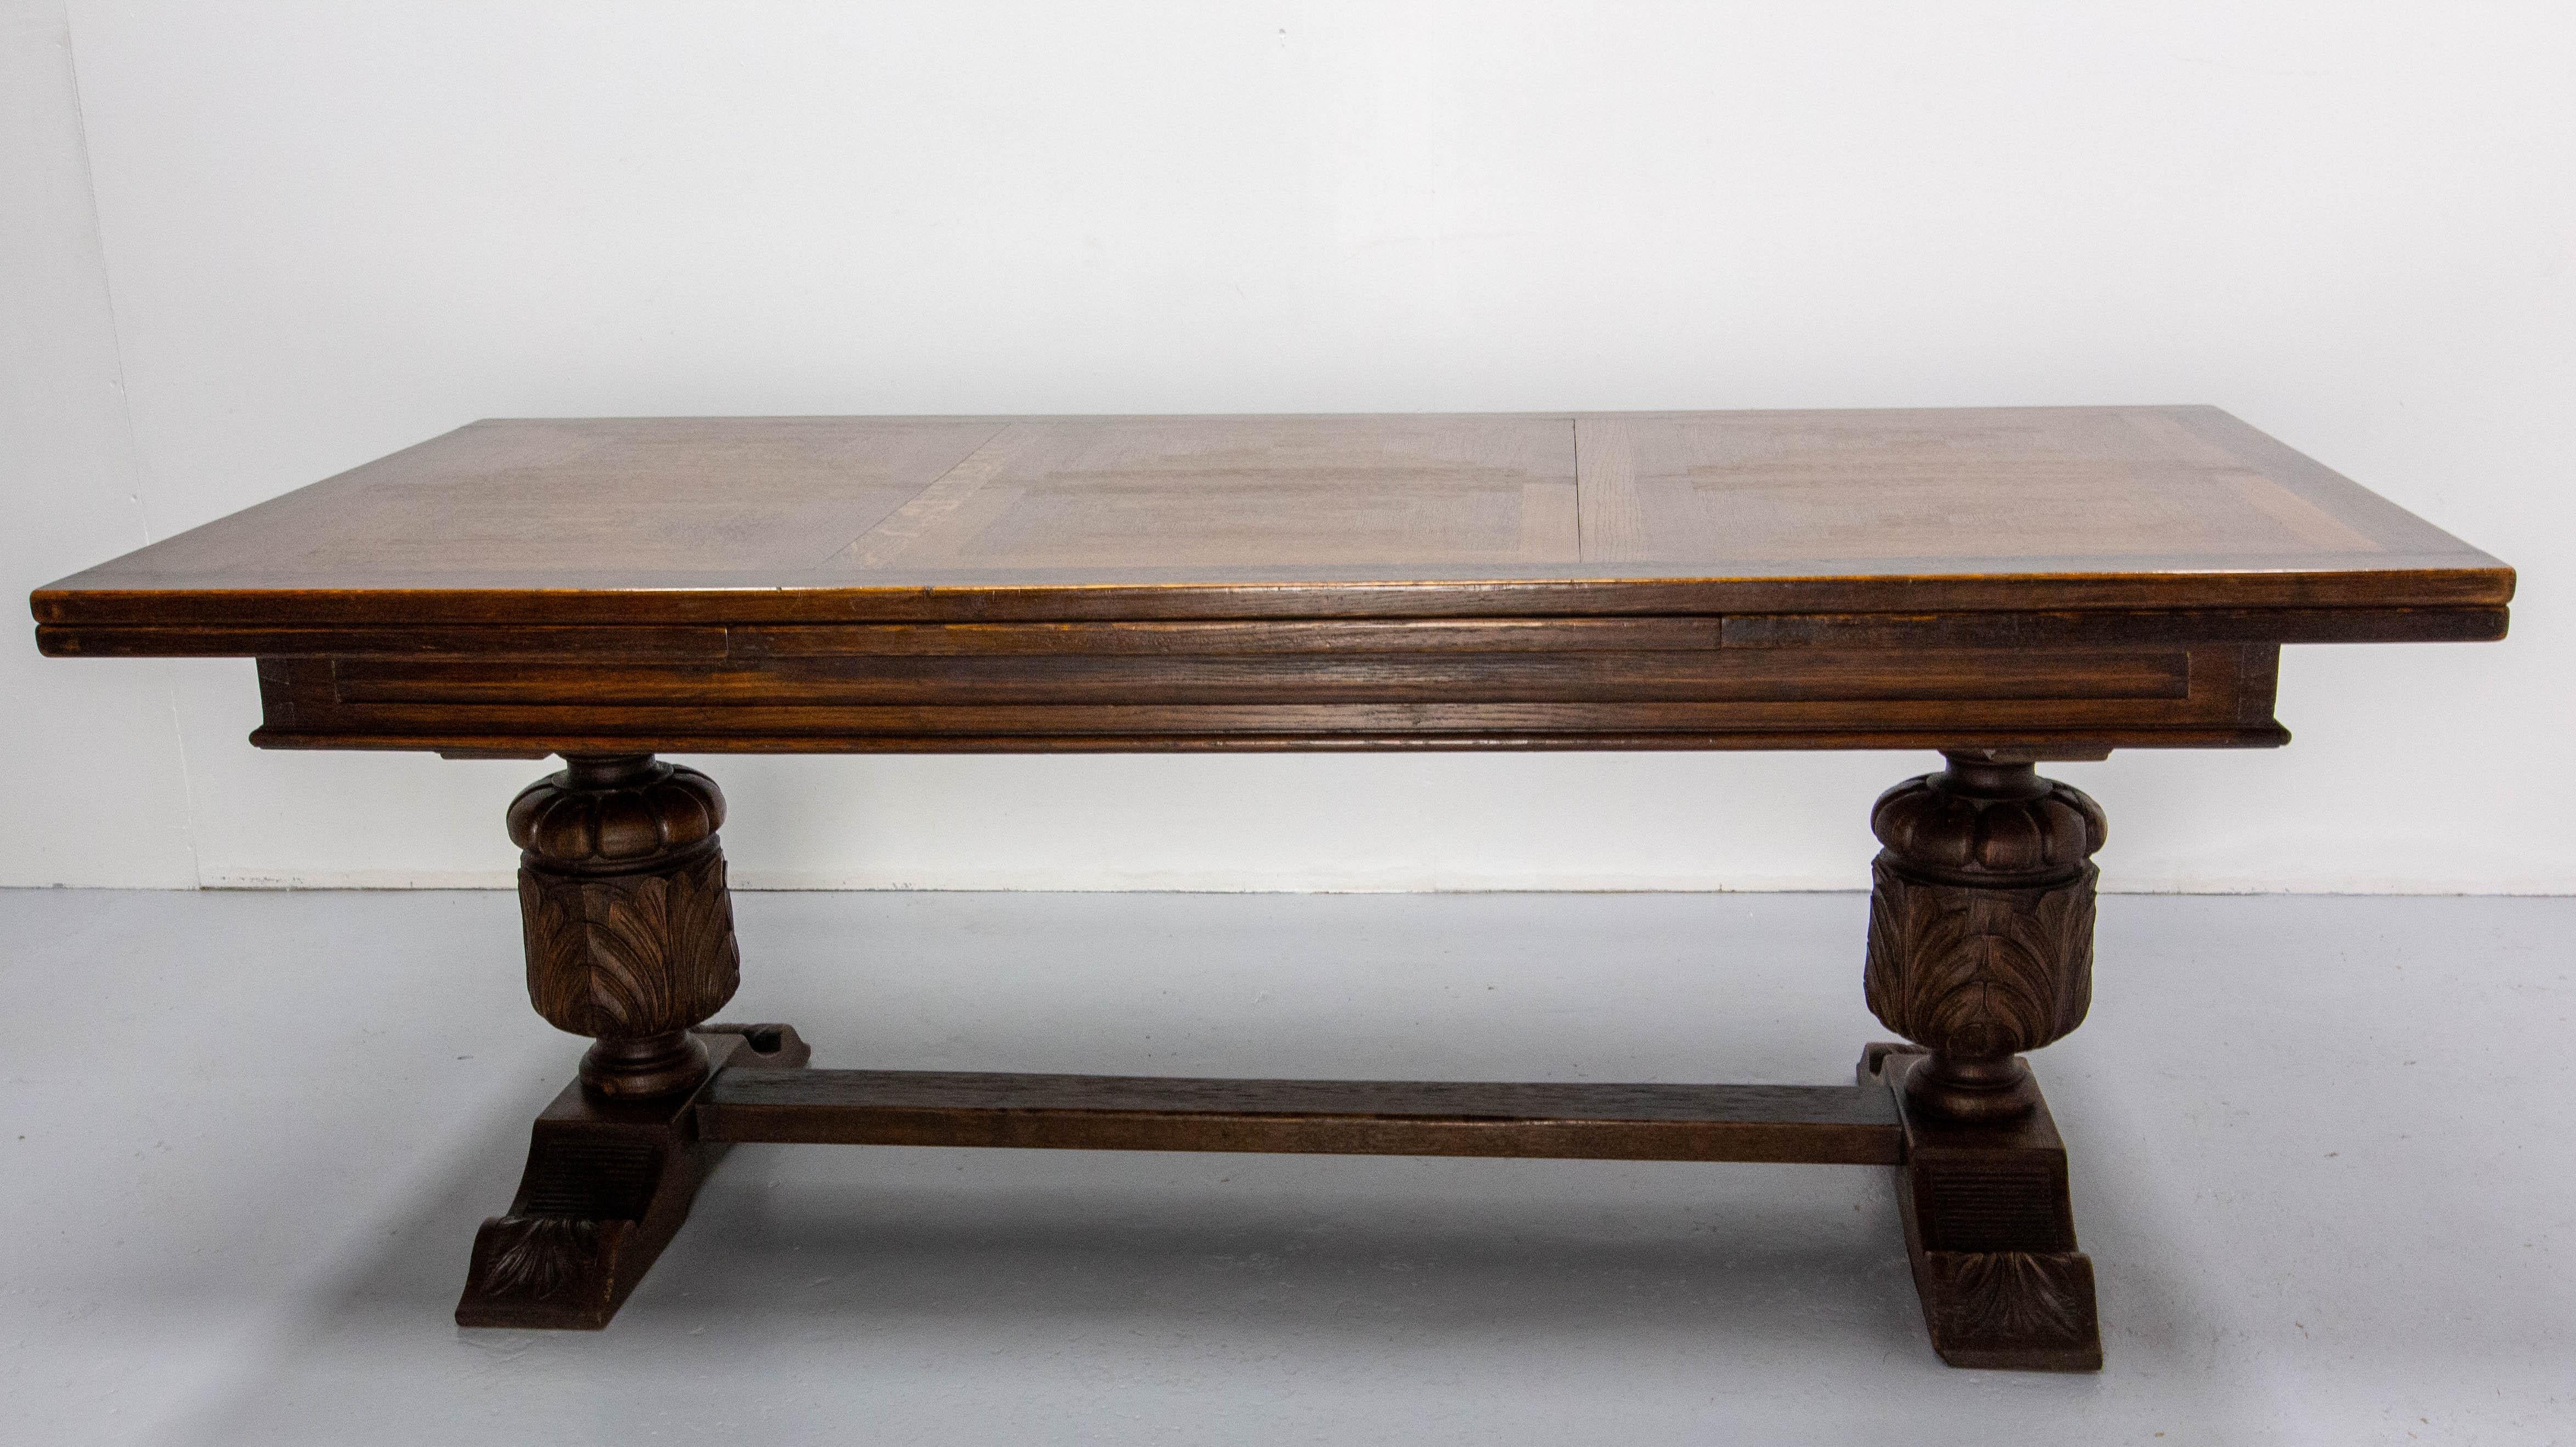 Französisch Spanisch Baskische Renaissance Revival Esstisch 1960
Massivholz Eiche geschnitzt. Die Tischplatte ist dank des Spiels mit der Richtung des Holzes in einem Schachbrettmuster gestaltet.
Mit den Erweiterungen vergrößert sich die Größe des